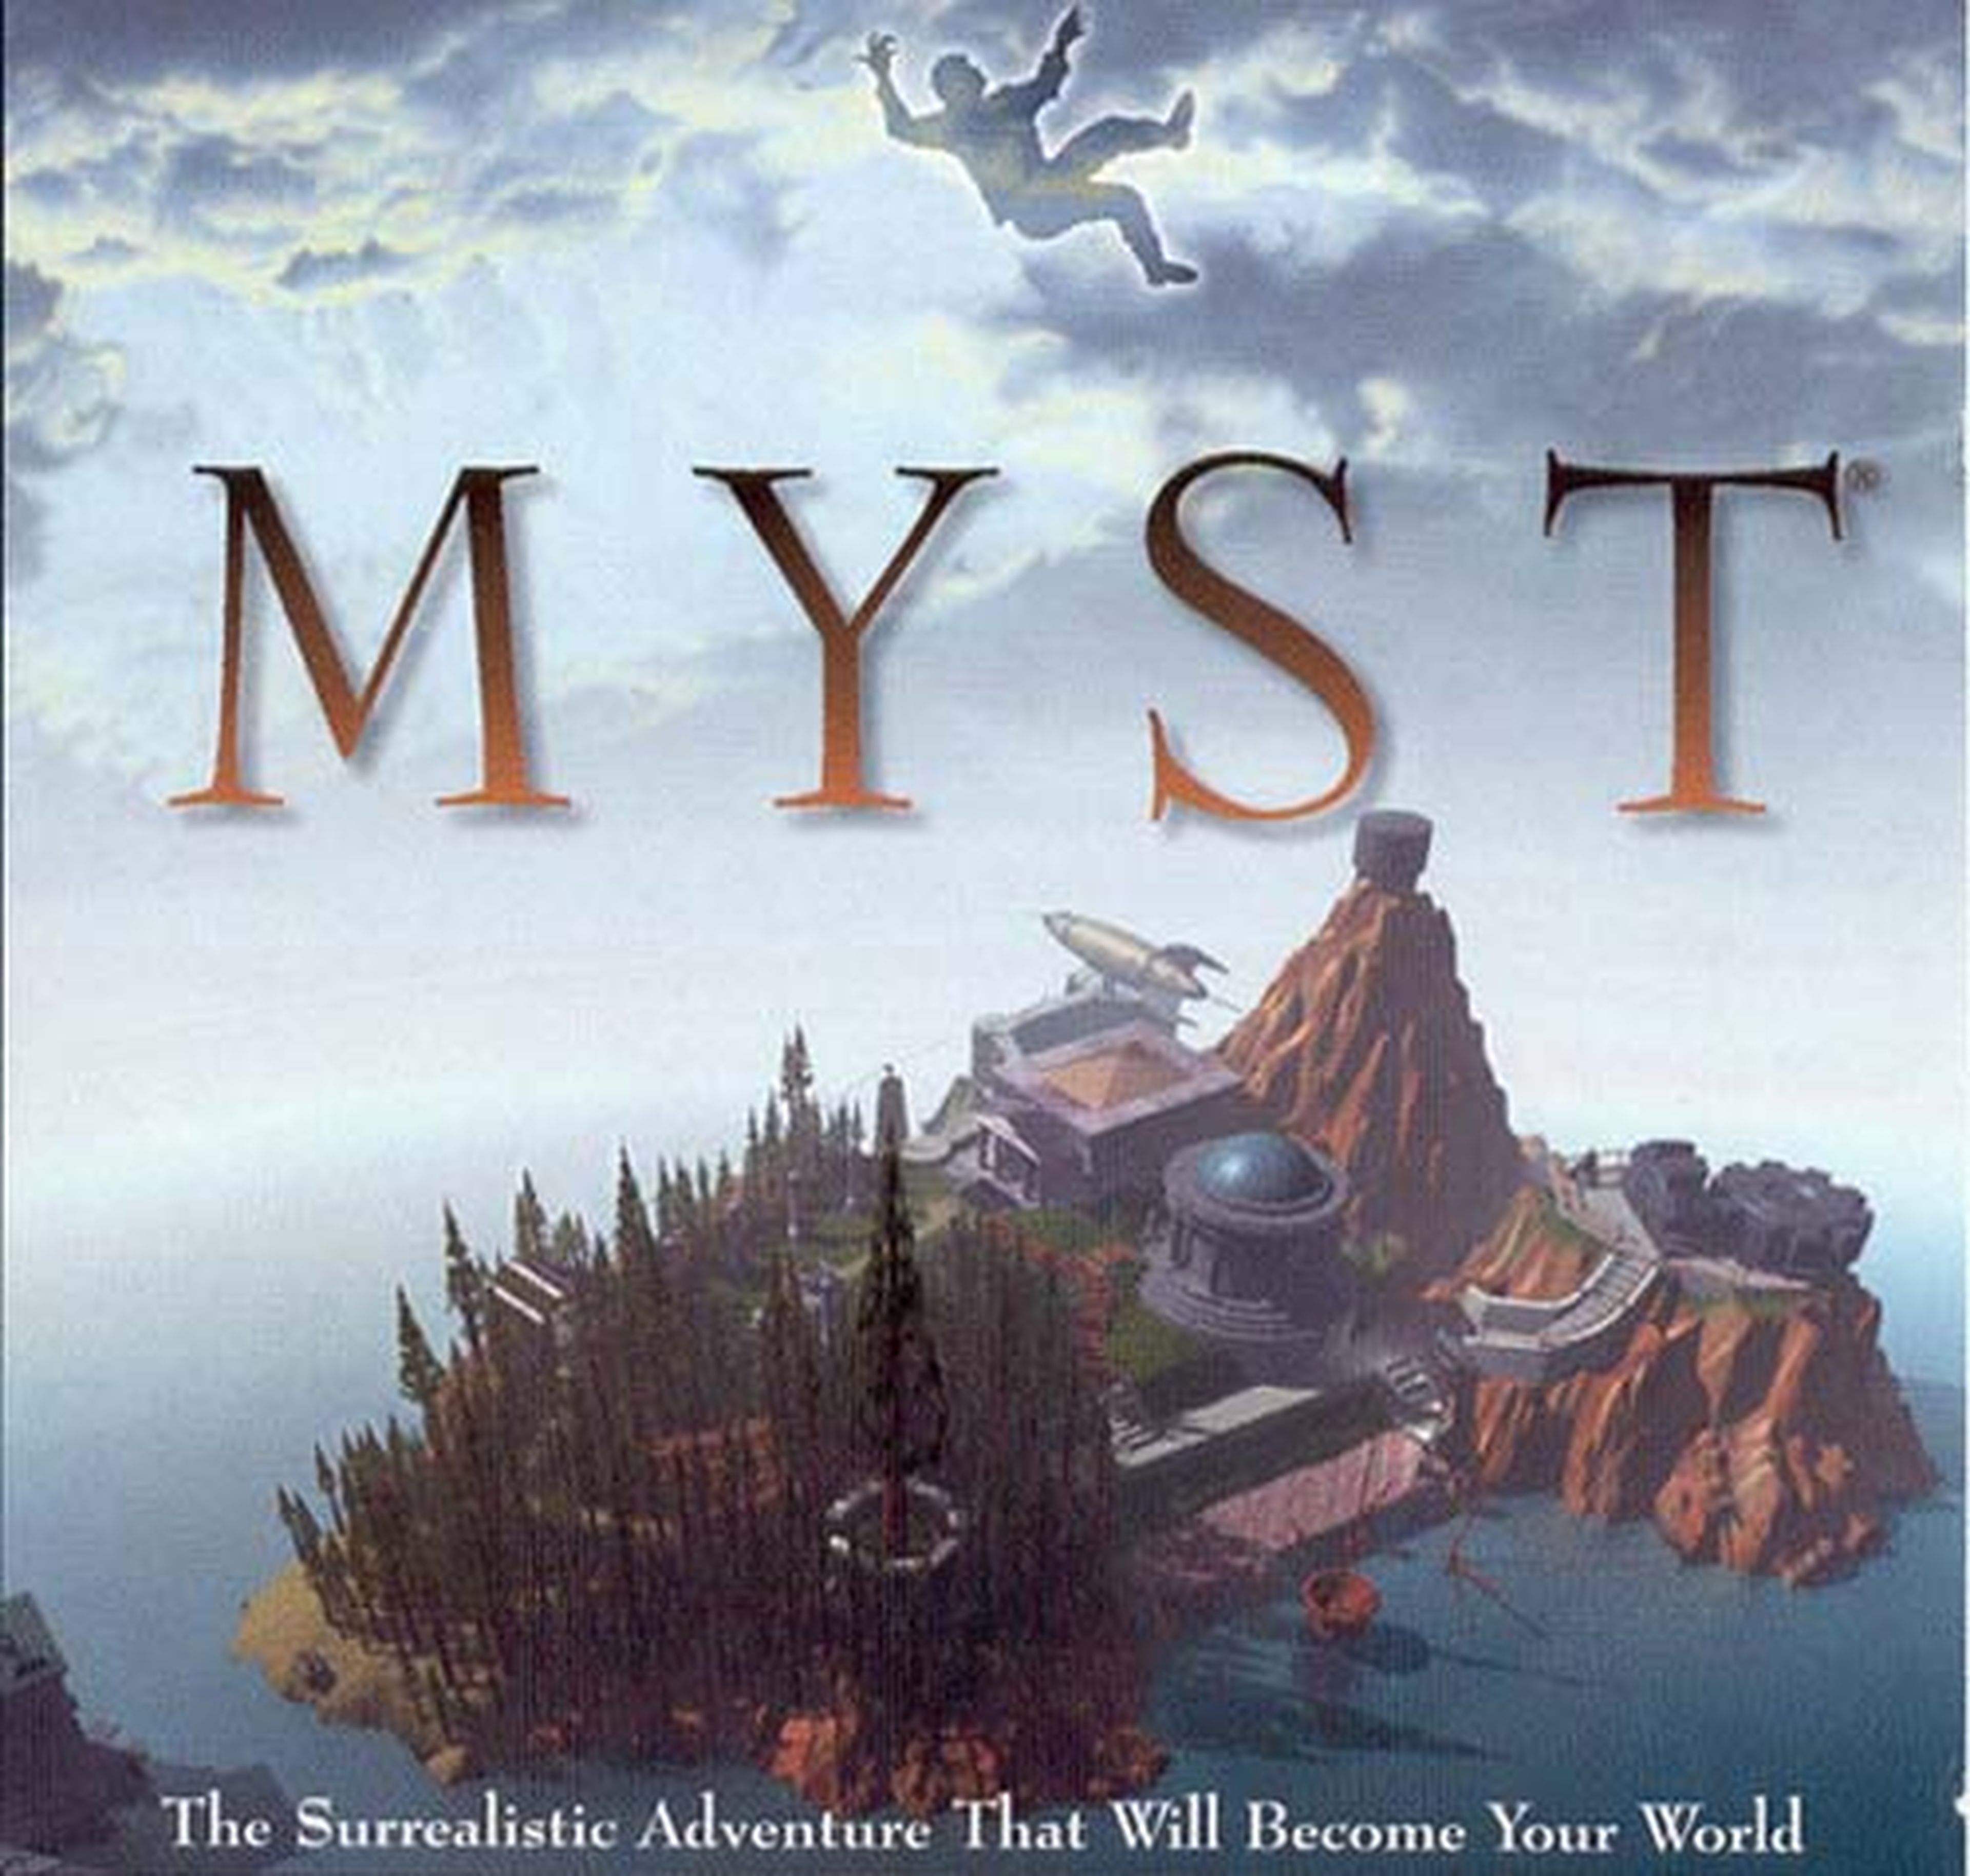 Serie de televisión de Myst, en marcha